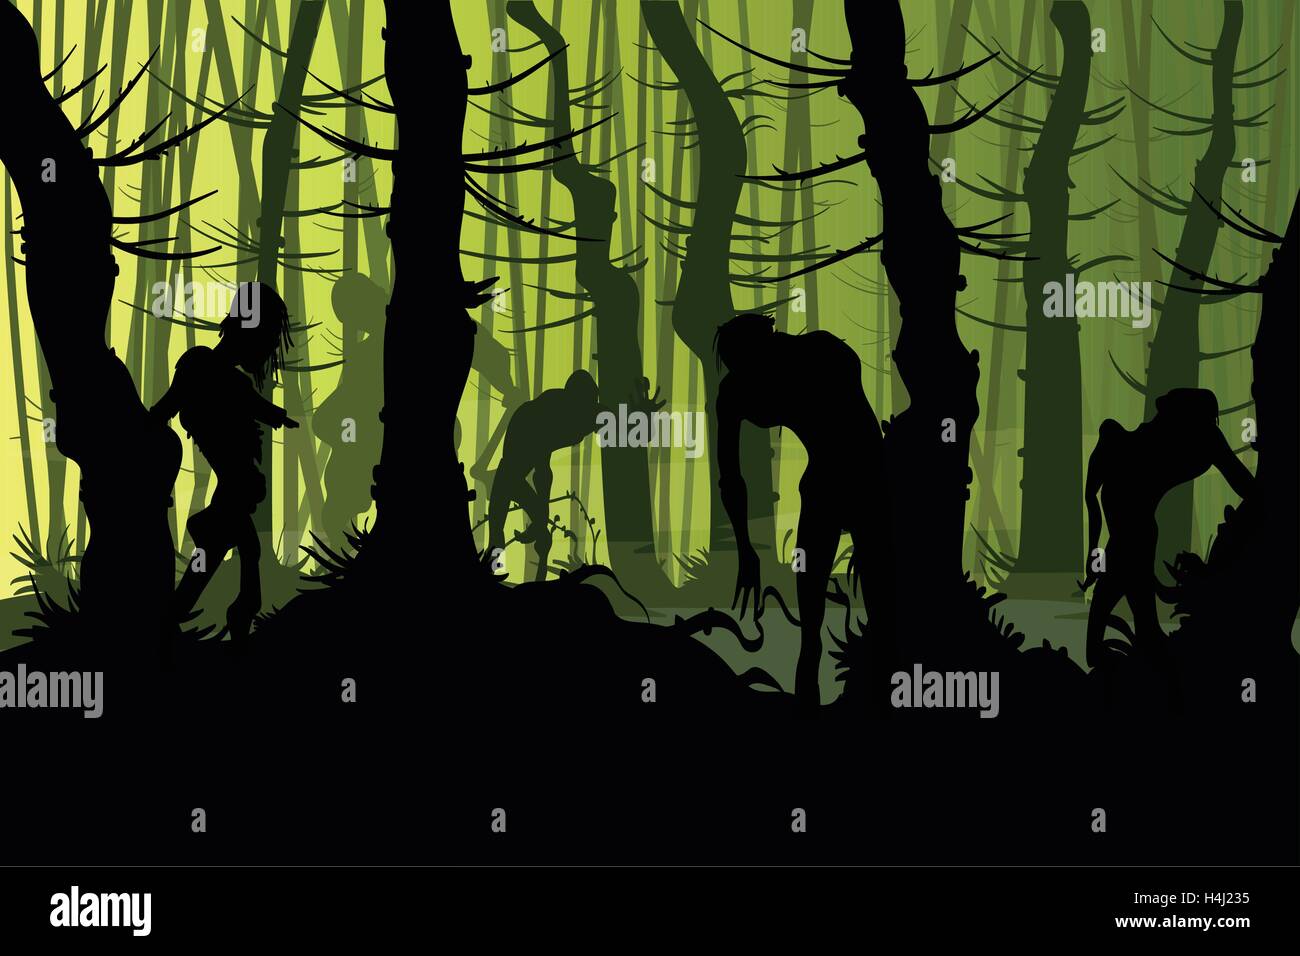 Ilustración vectorial de zombis, la itinerancia de una escalofriante noche bosque de neblina Ilustración del Vector